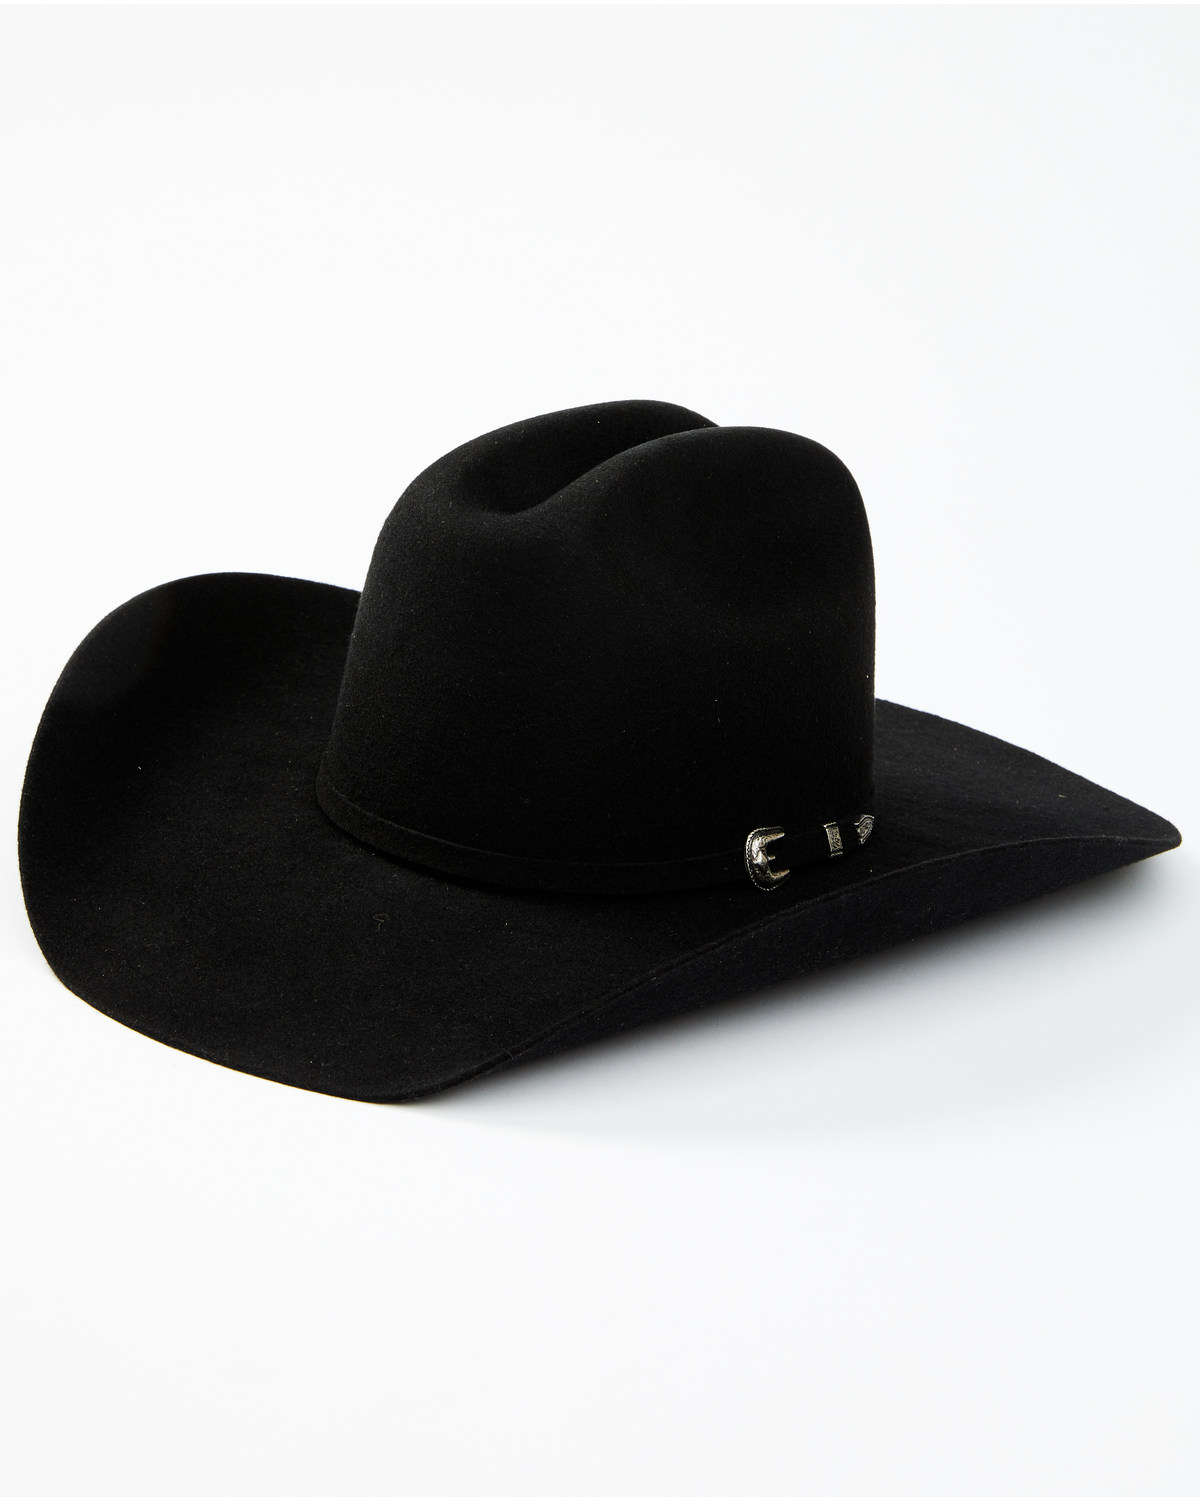 Cody James Colt 3X Felt Cowboy Hat